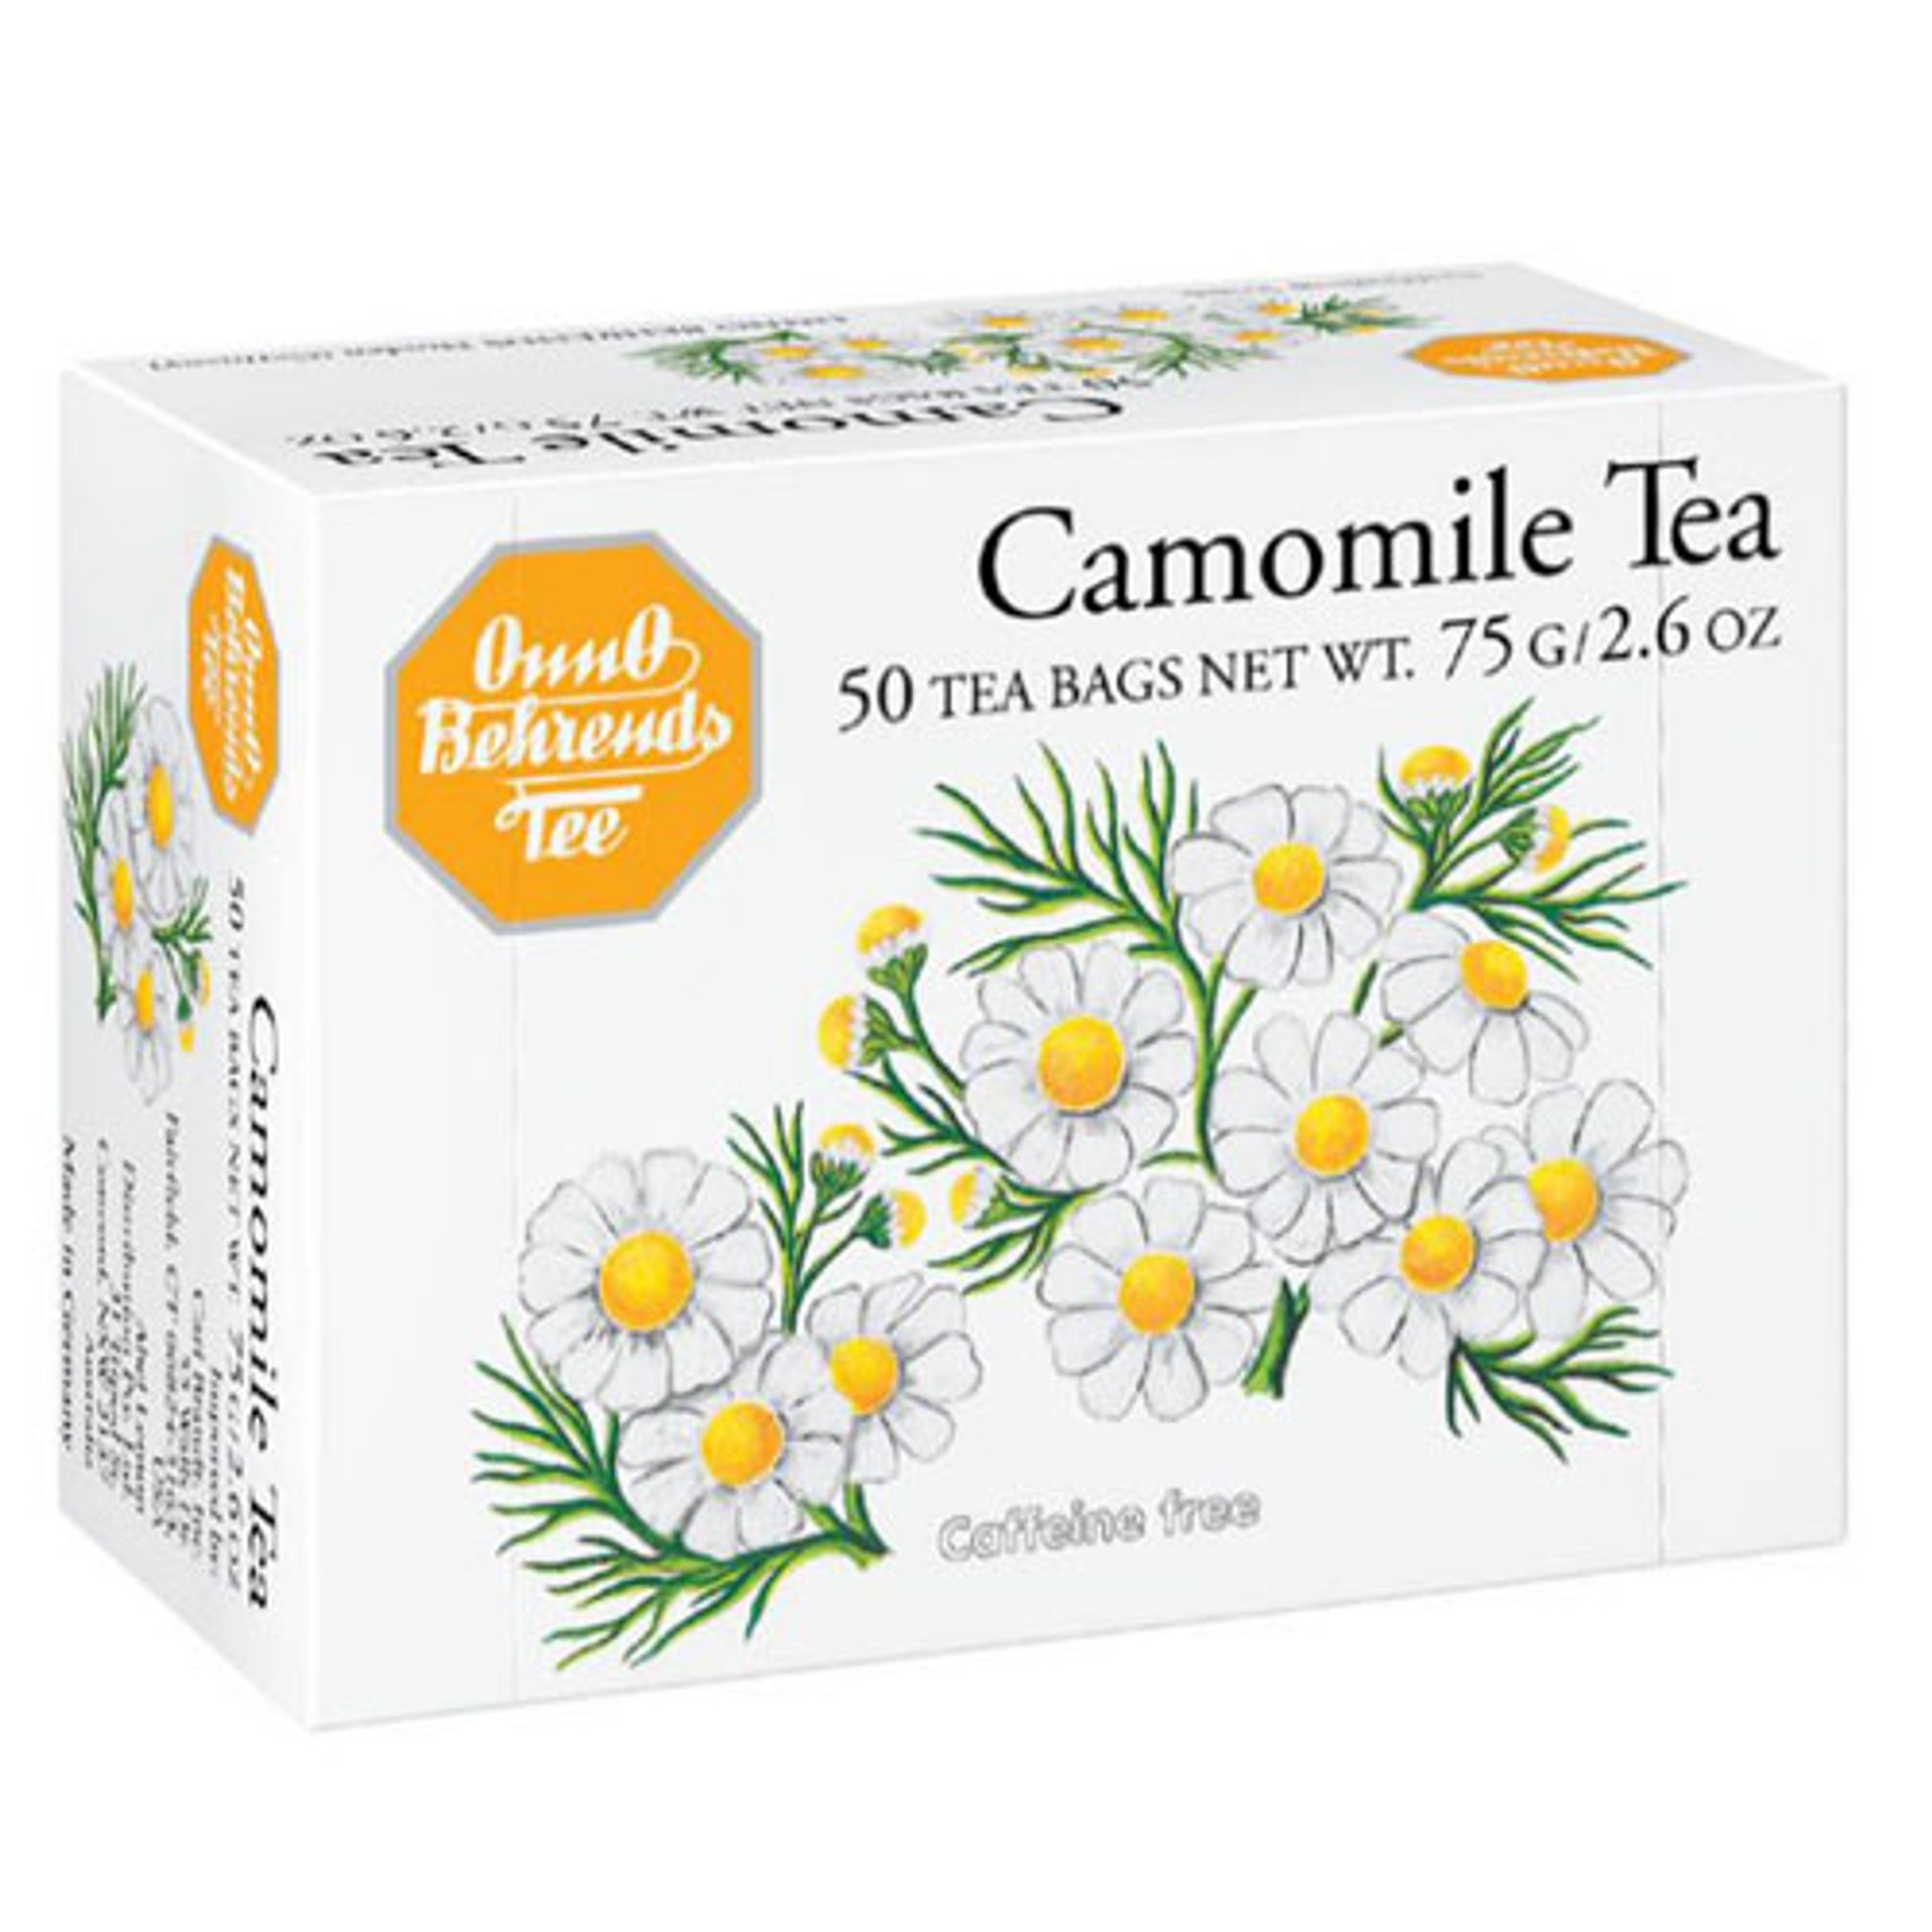 Onno Behrends Camomile Tea 4.8oz